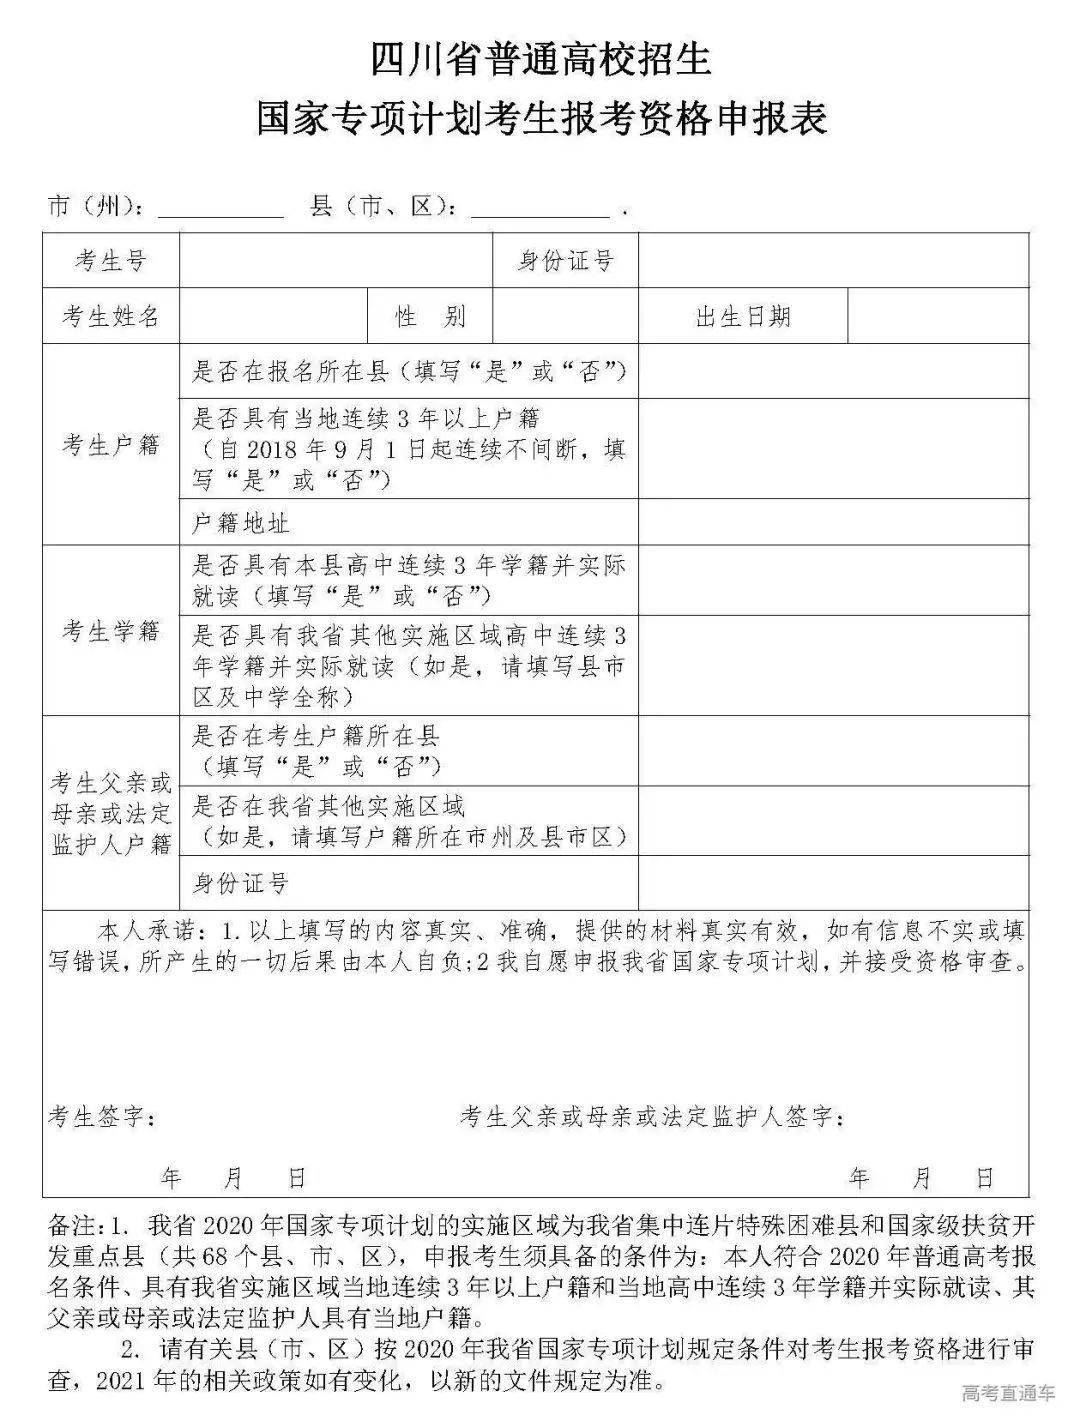 2021年四川高考加分政策及申报流程